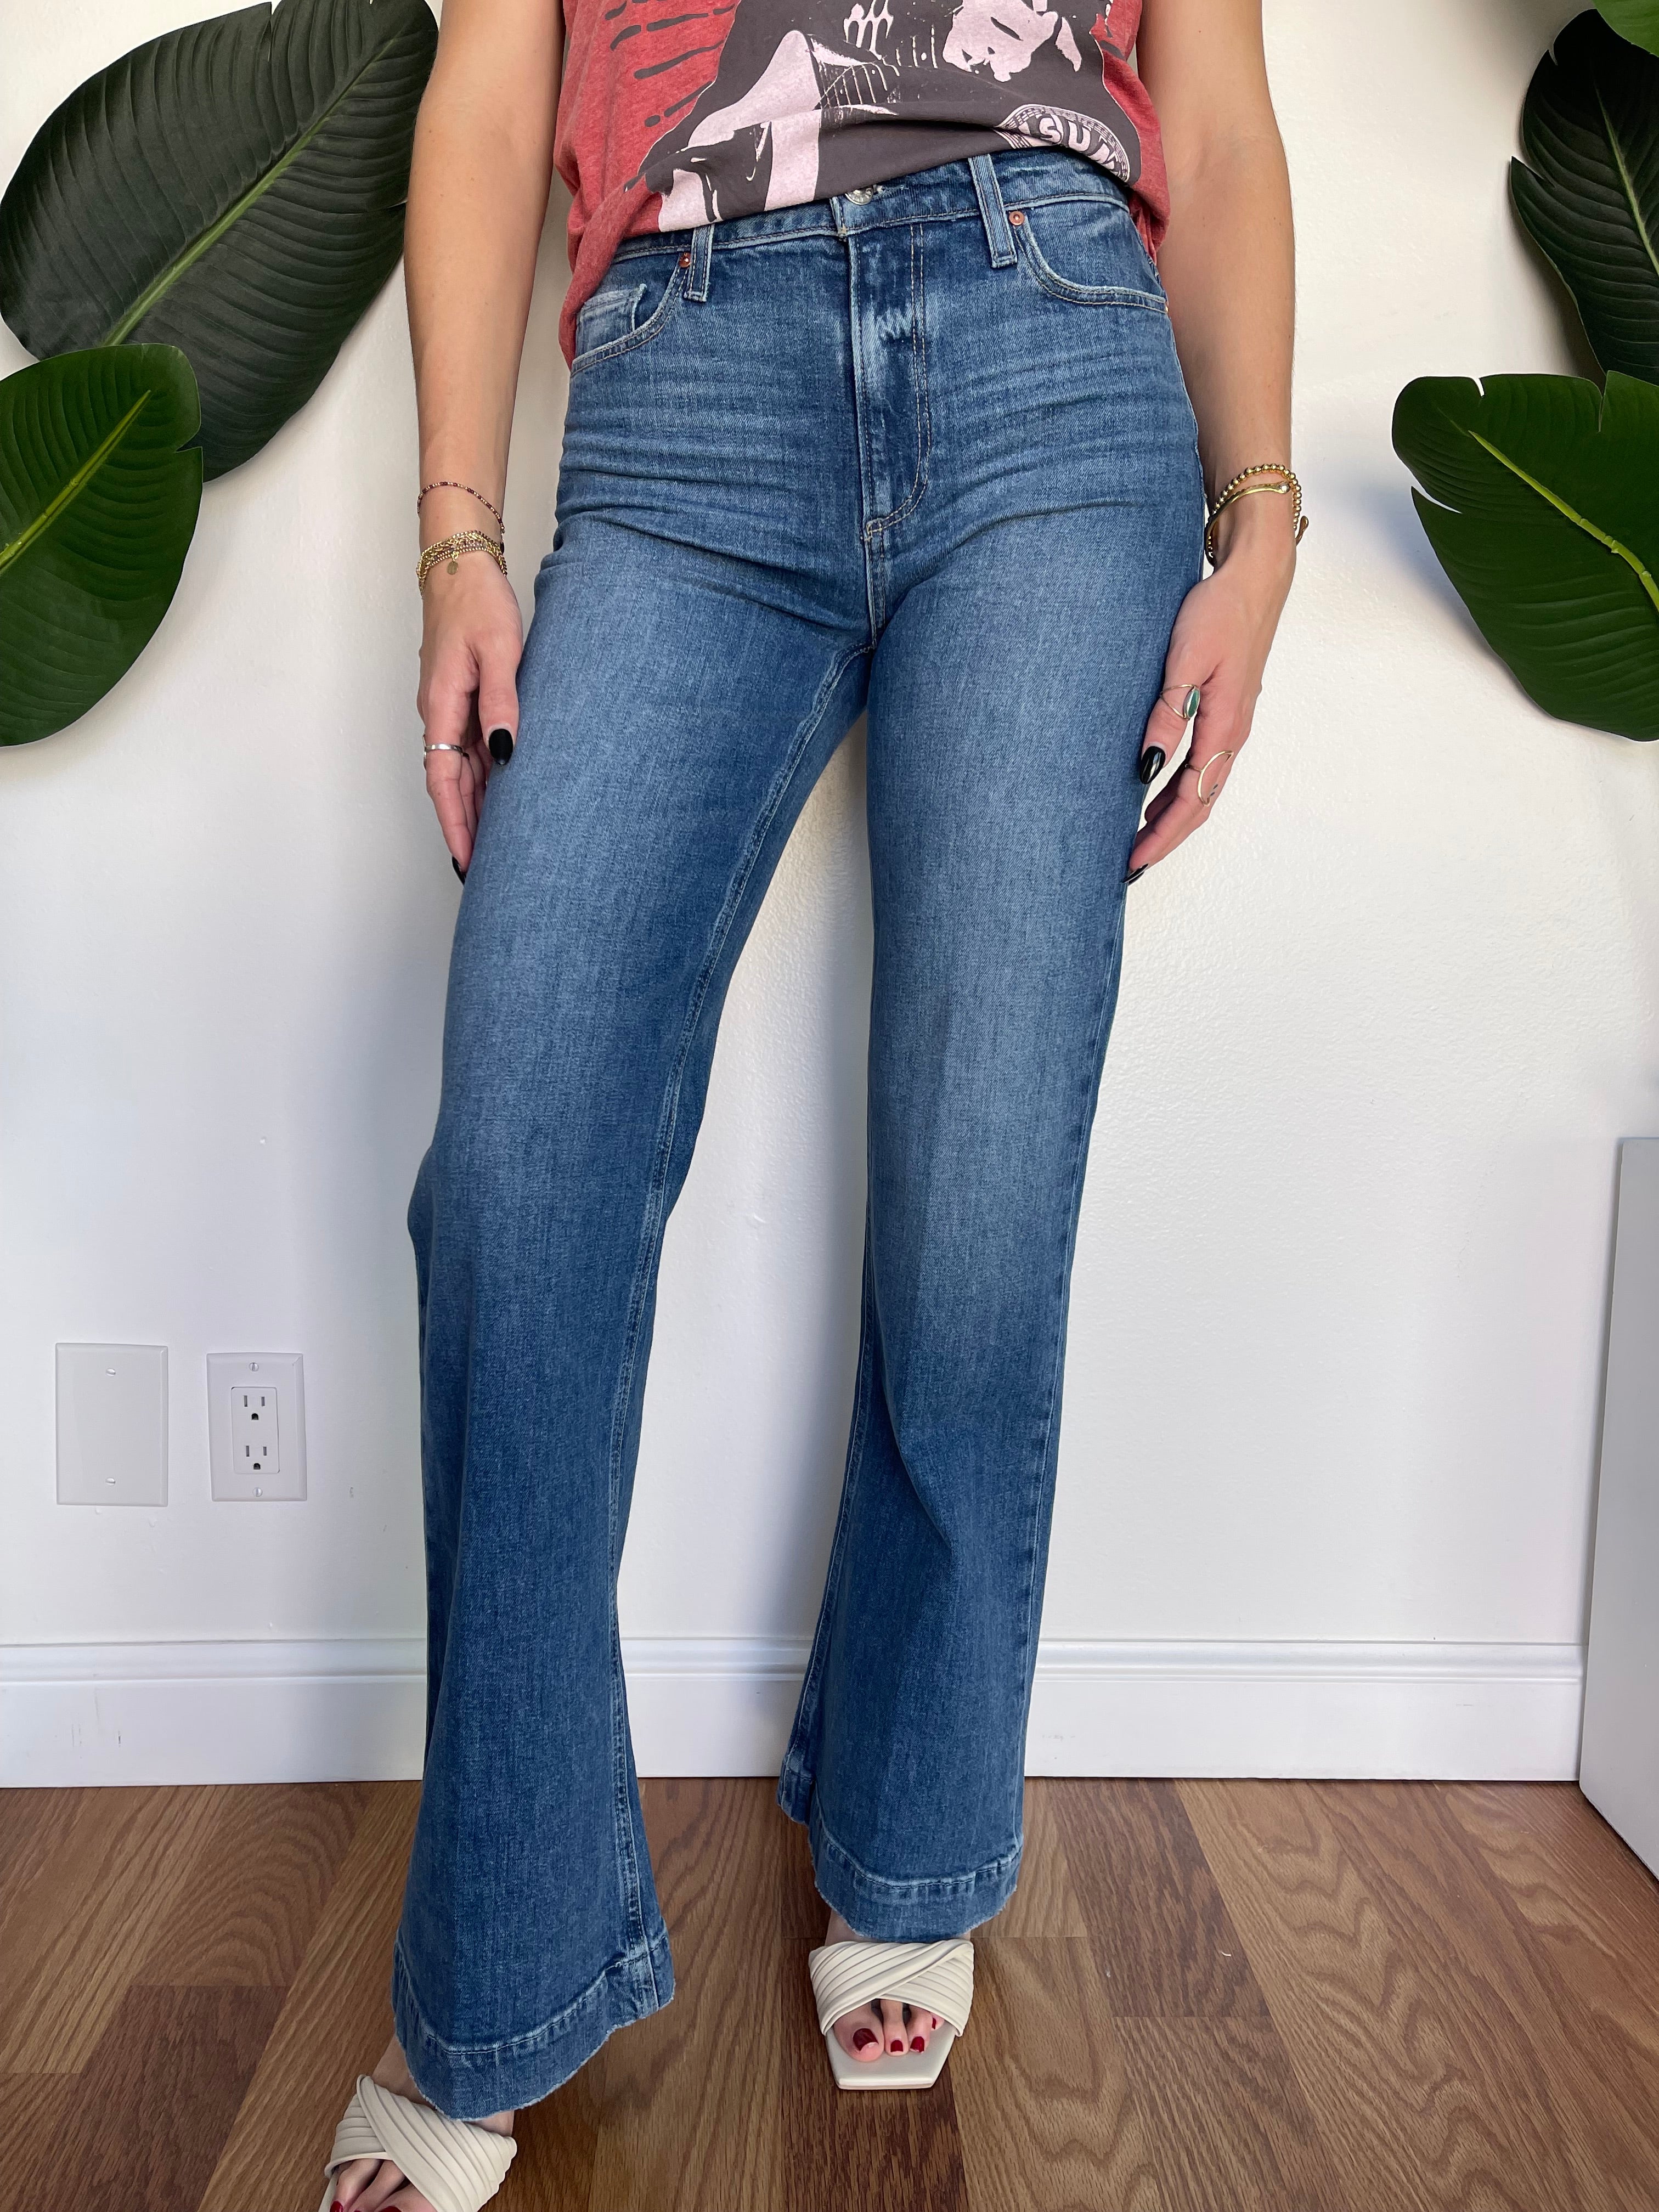 H)#Paige Women's denim jeans size 27 white color... - Depop